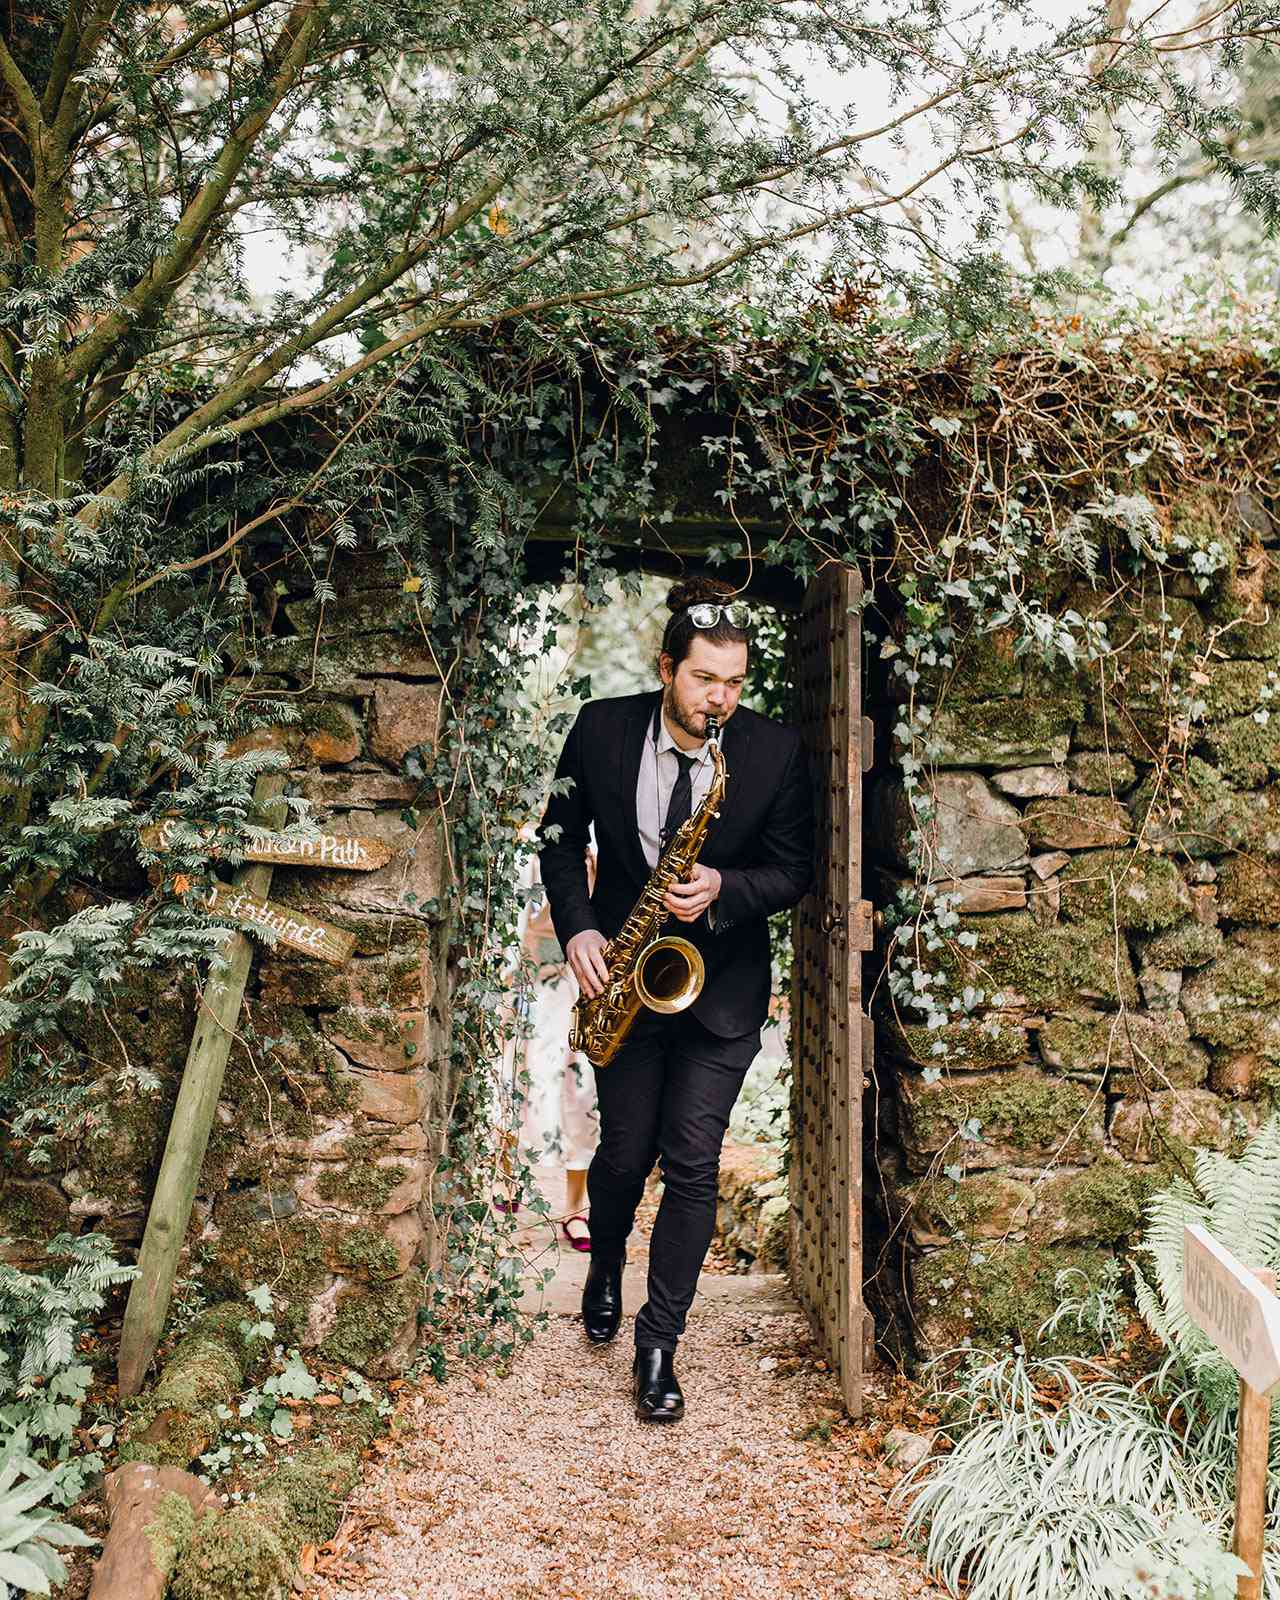 wedding saxophone player garden entrance